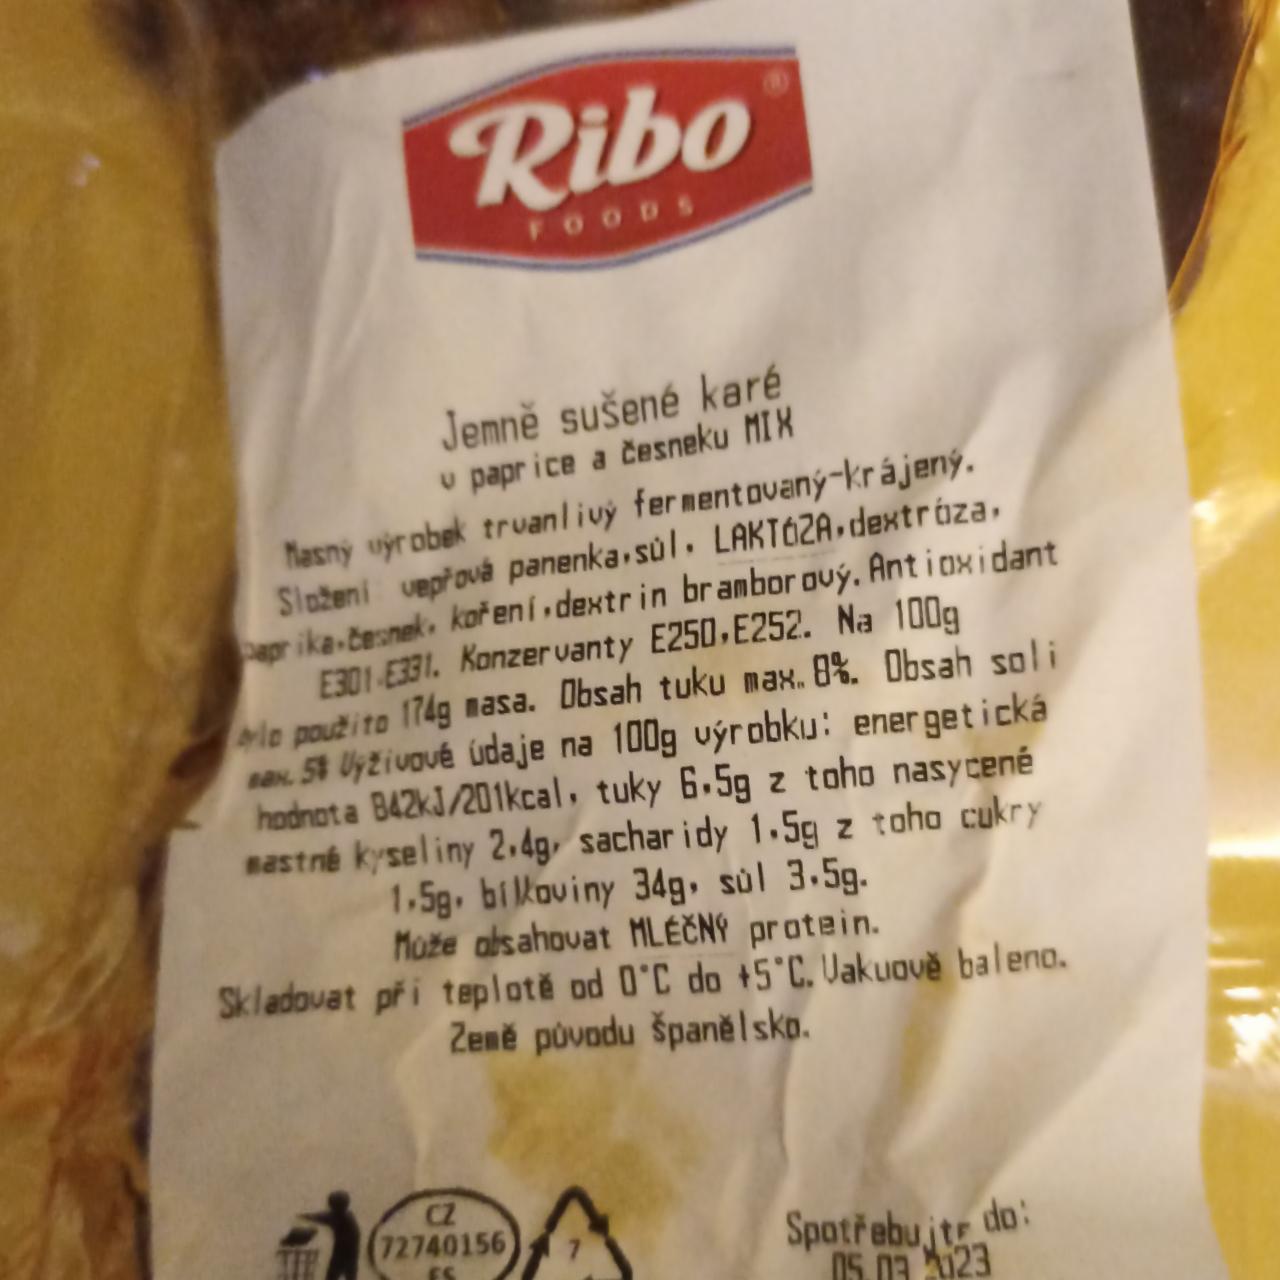 Fotografie - Jemně sušené karé v paprice a česneku MIX Ribo foods